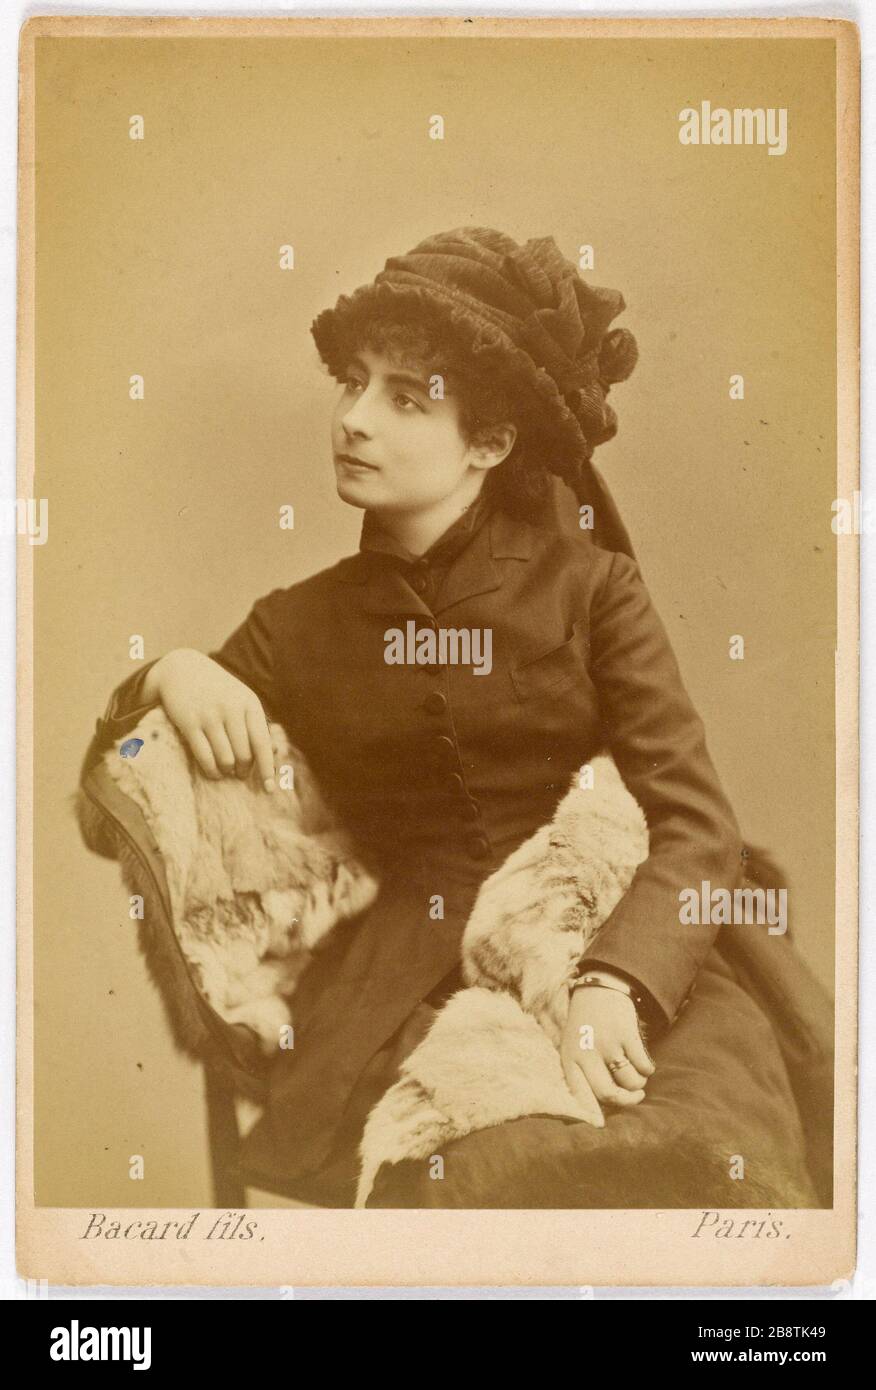 Portrait of Henriot Jane (1878-1900), actress 'Jane Henriot (1878-1900), actrice'. Photographie de Bacard Fils, dit Paul Bacard (né en 1845). Tirage sur papier albuminé. Paris, musée Carnavalet. Stock Photo